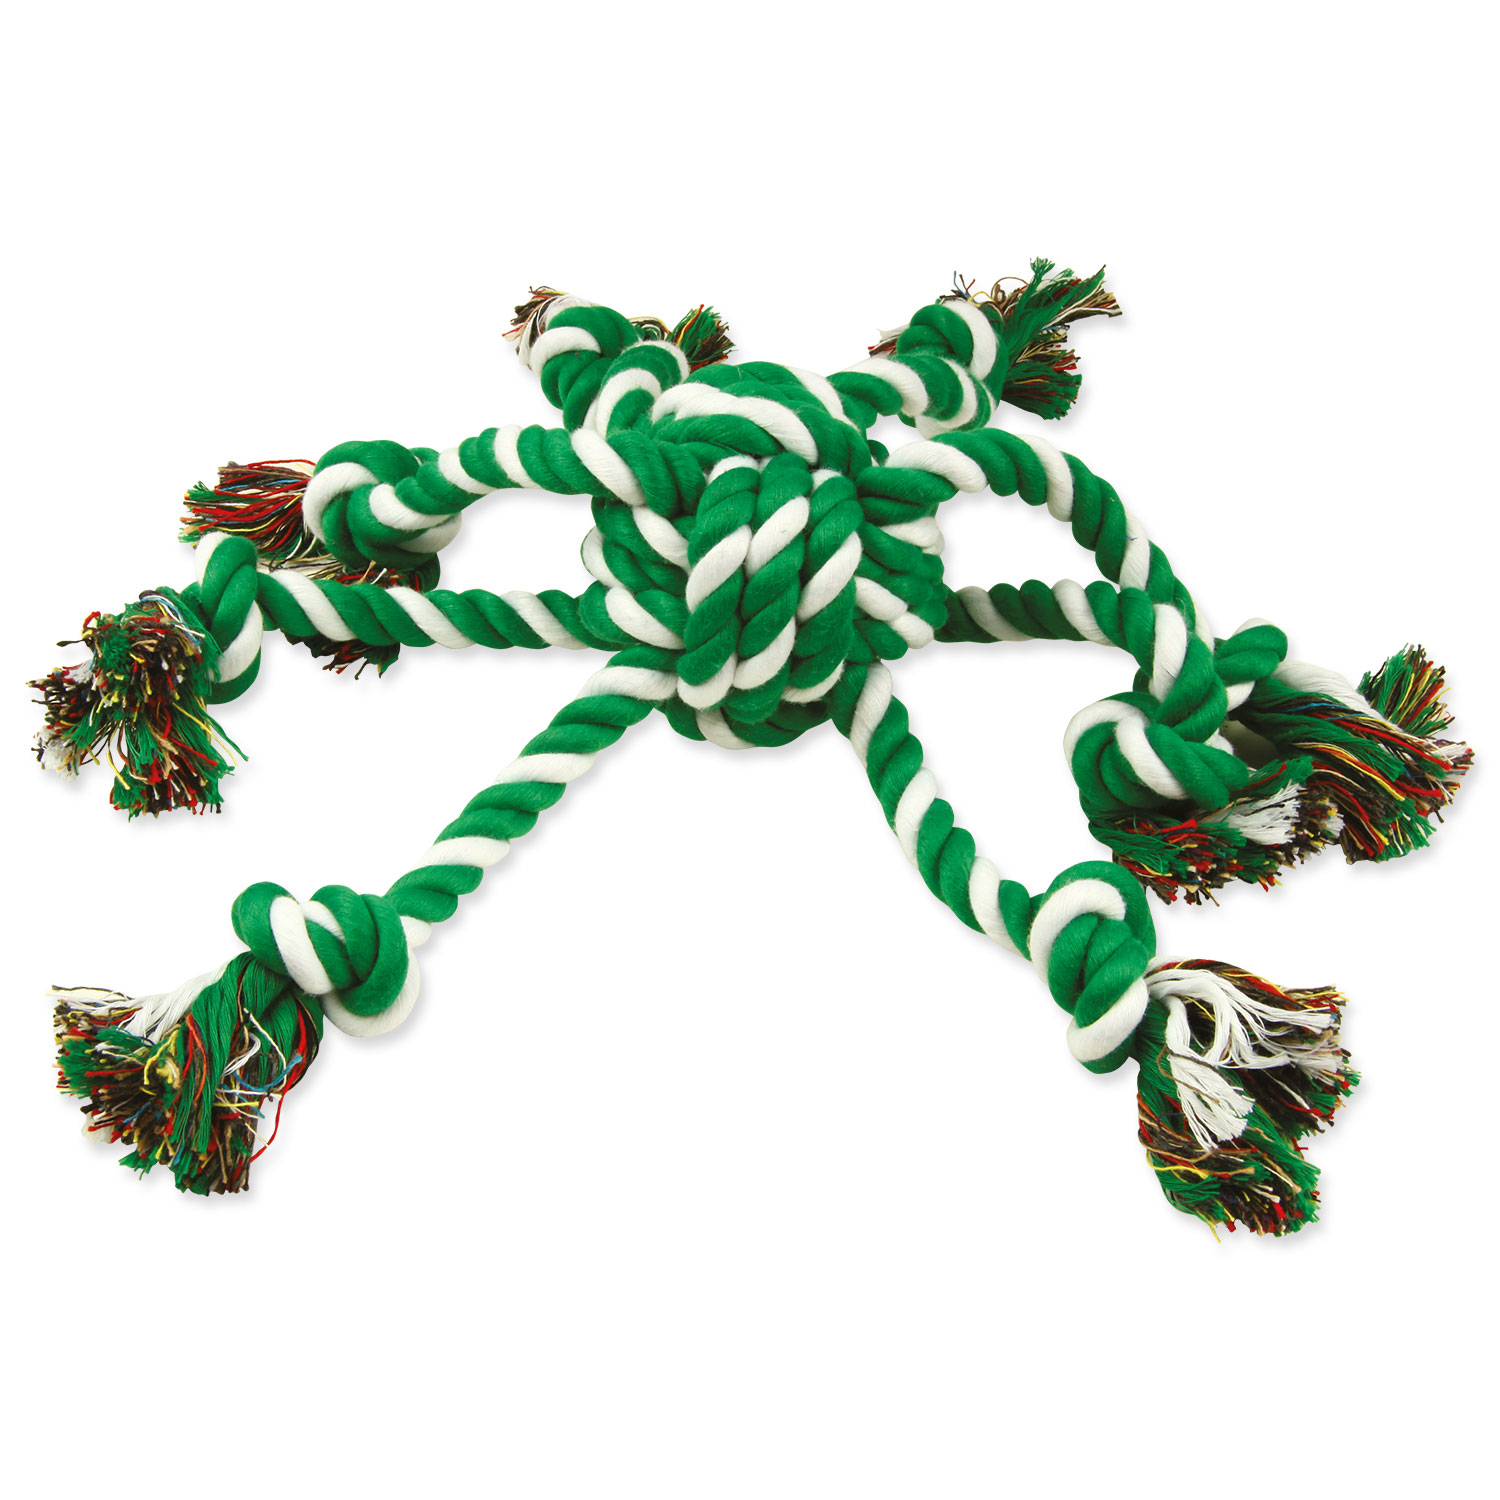 Přetahovadlo DOG FANTASY chobotnice zeleno-bílá, 45 cm